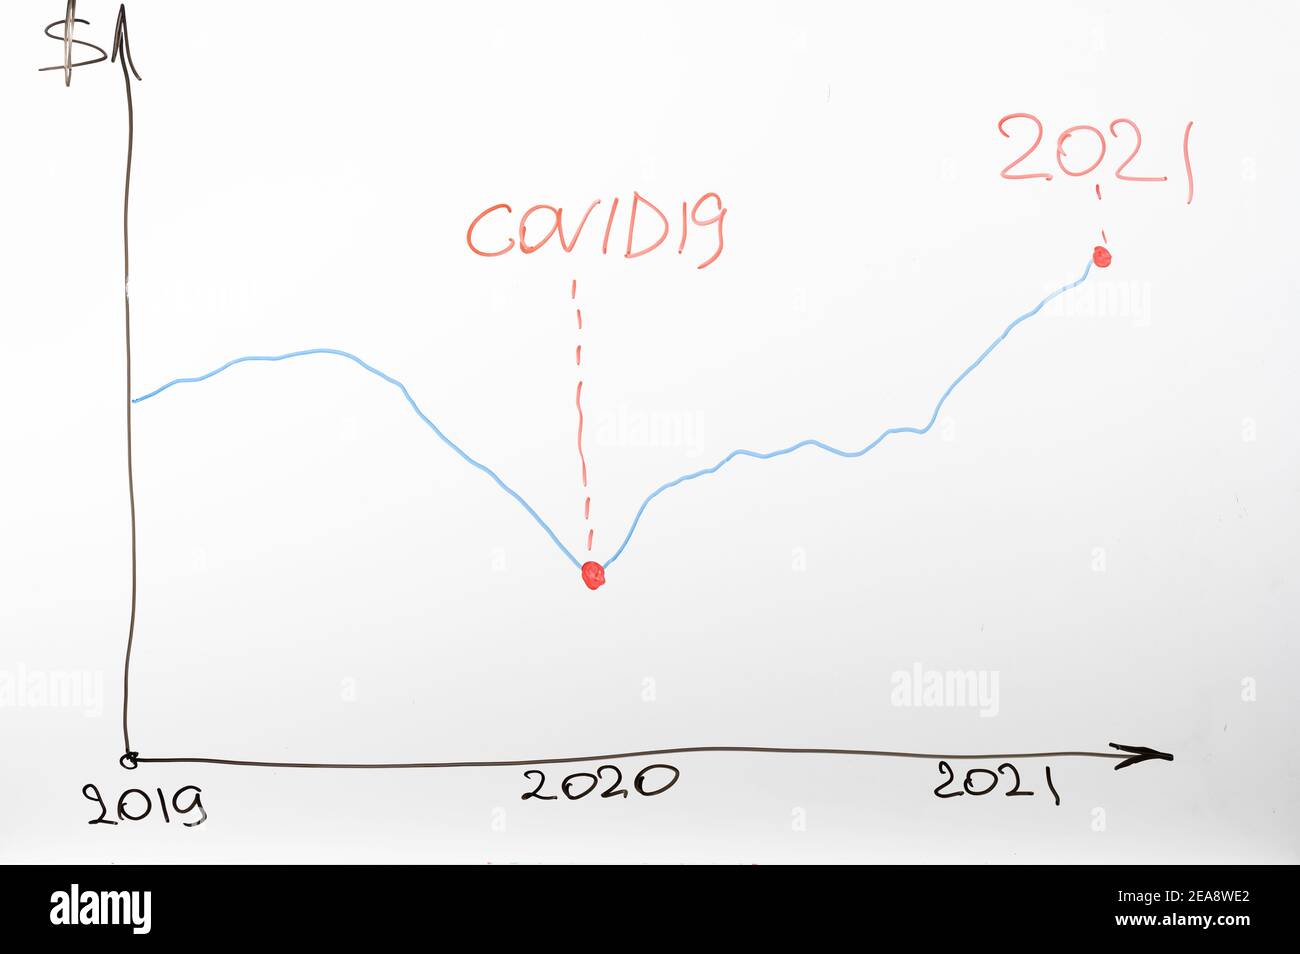 ripresa economica a seguito della crisi causata dal coronavirus covid-19. grafico della lavagna che mostra la crescita economica a seguito del coronavirus covid-19 Foto Stock